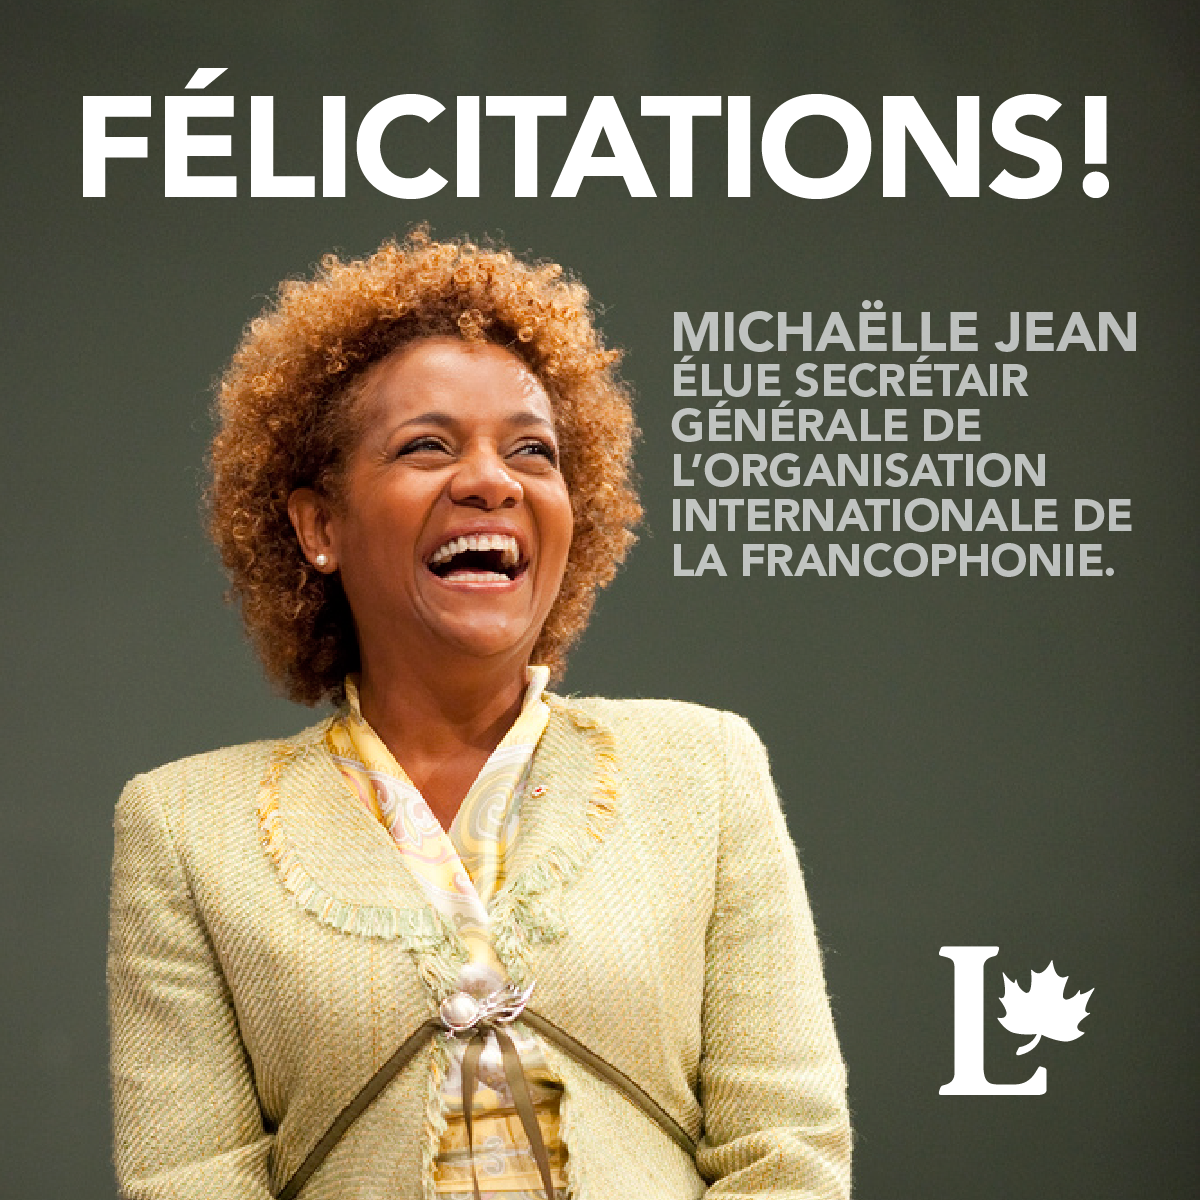 Nous sommes extrêmement fiers de l’élection de Michaëlle Jean à la tête de l’Organisation internationale de la Francophonie!